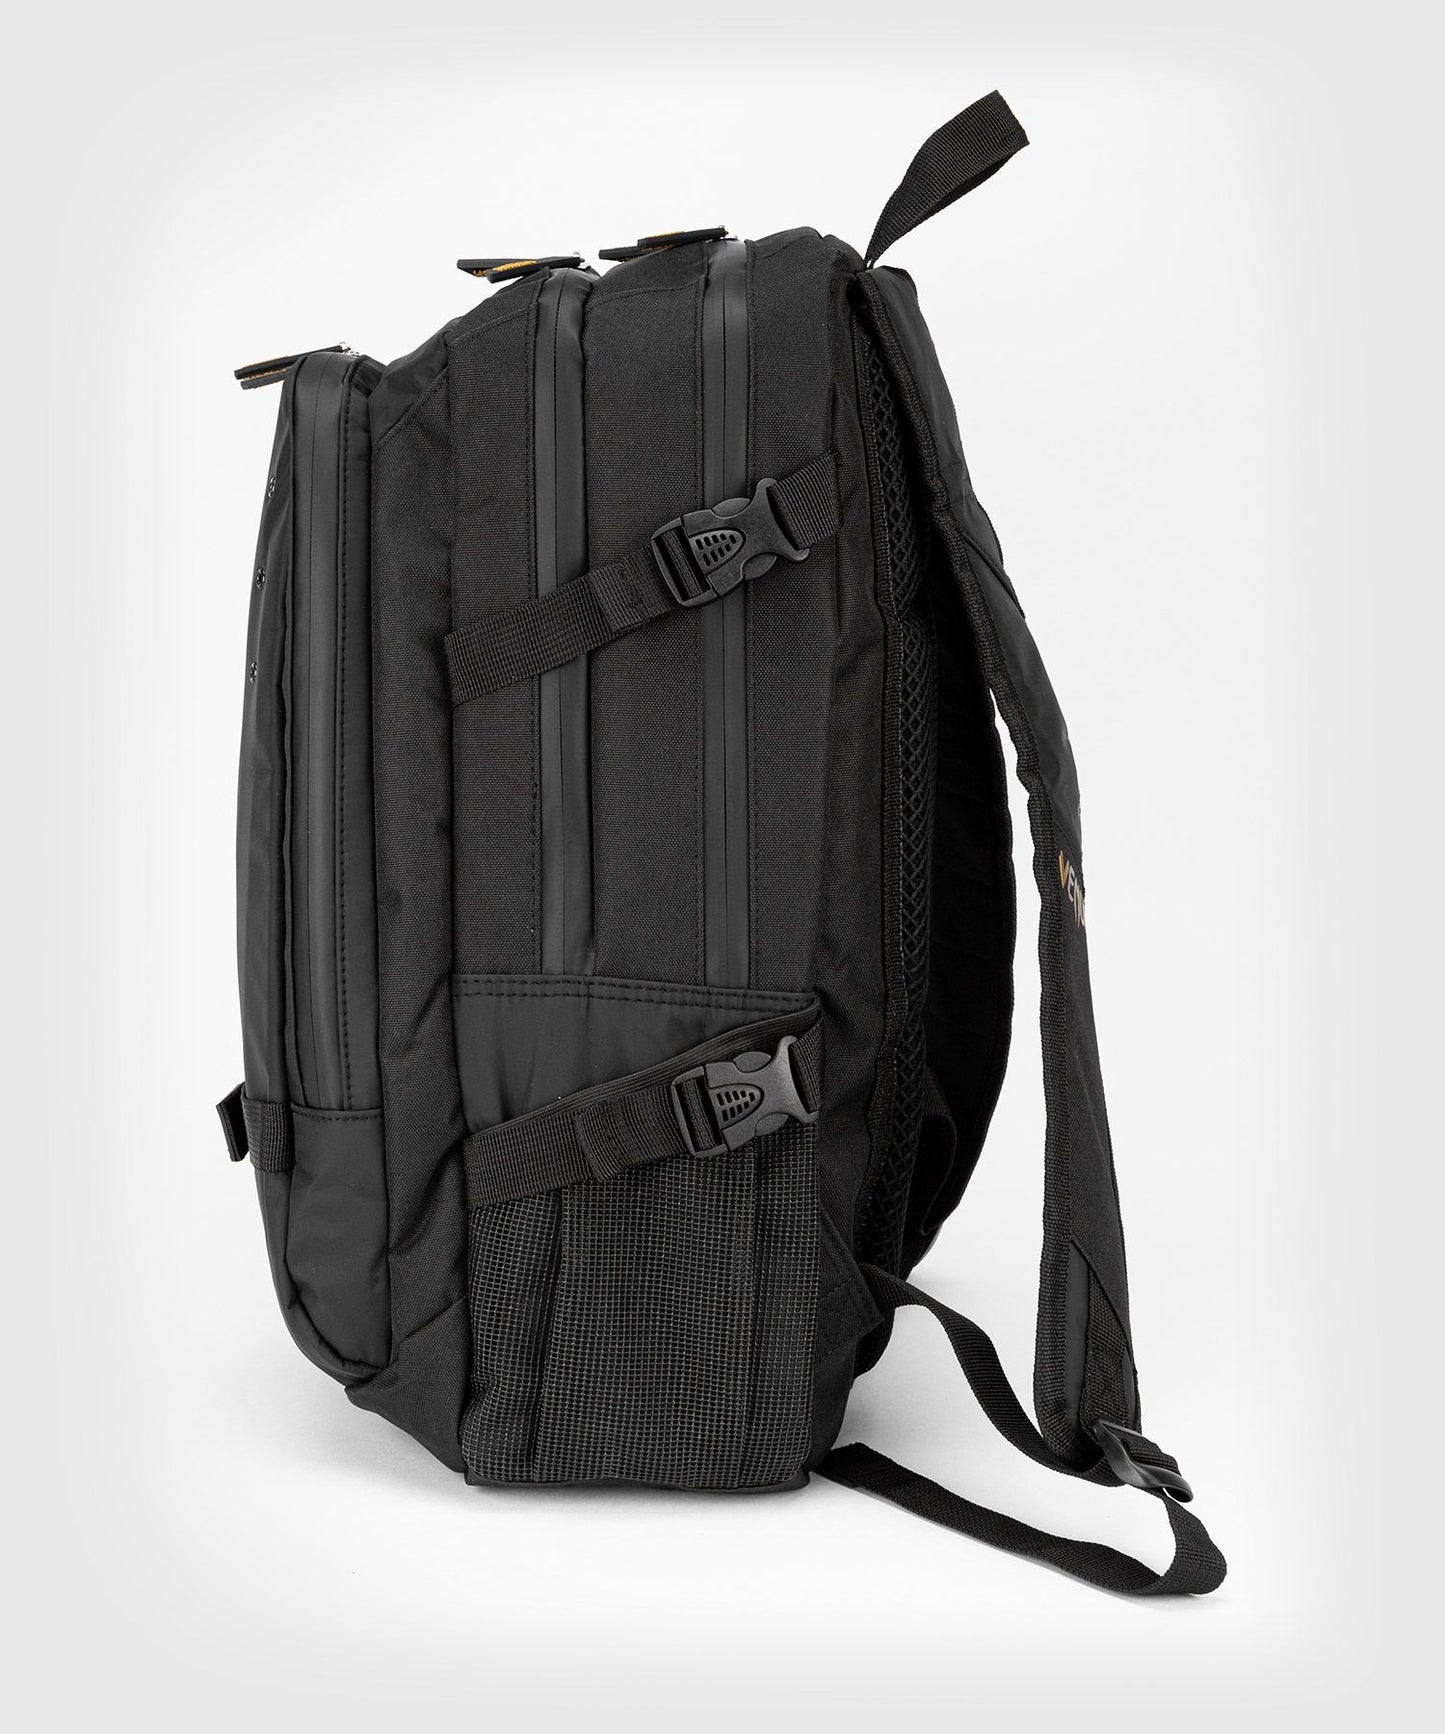 Challenger Pro Evo Backpack-Black/Gold